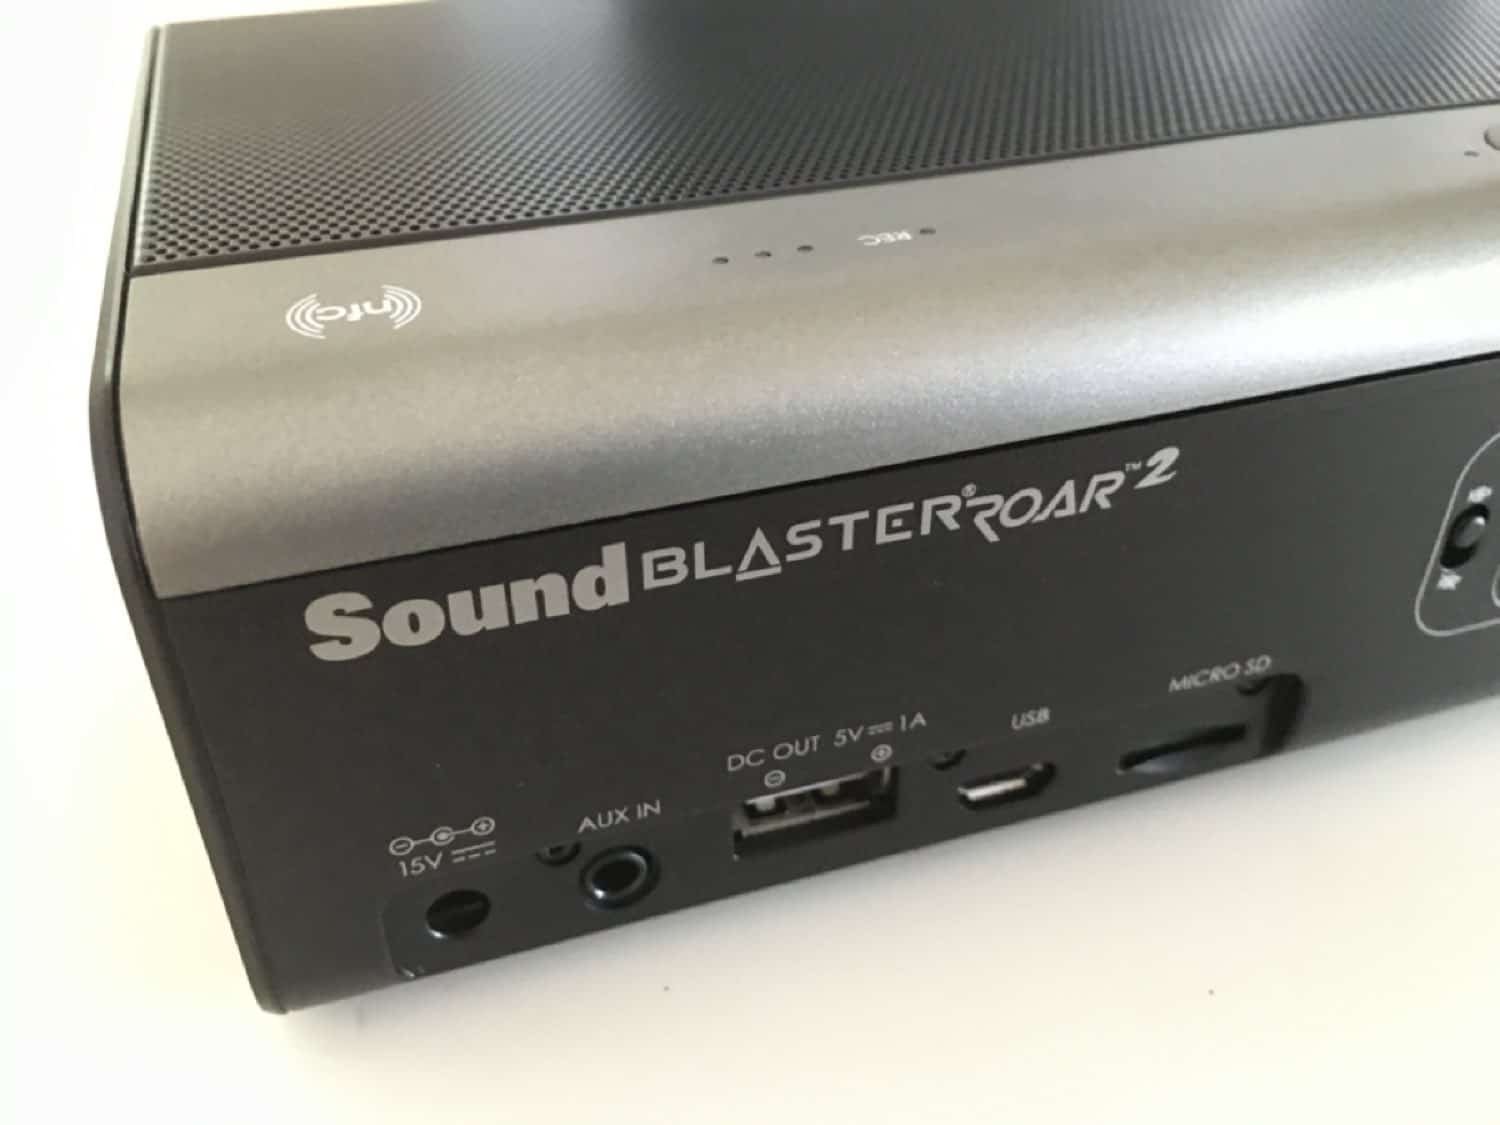 Creative Sound Blaster Roar 2